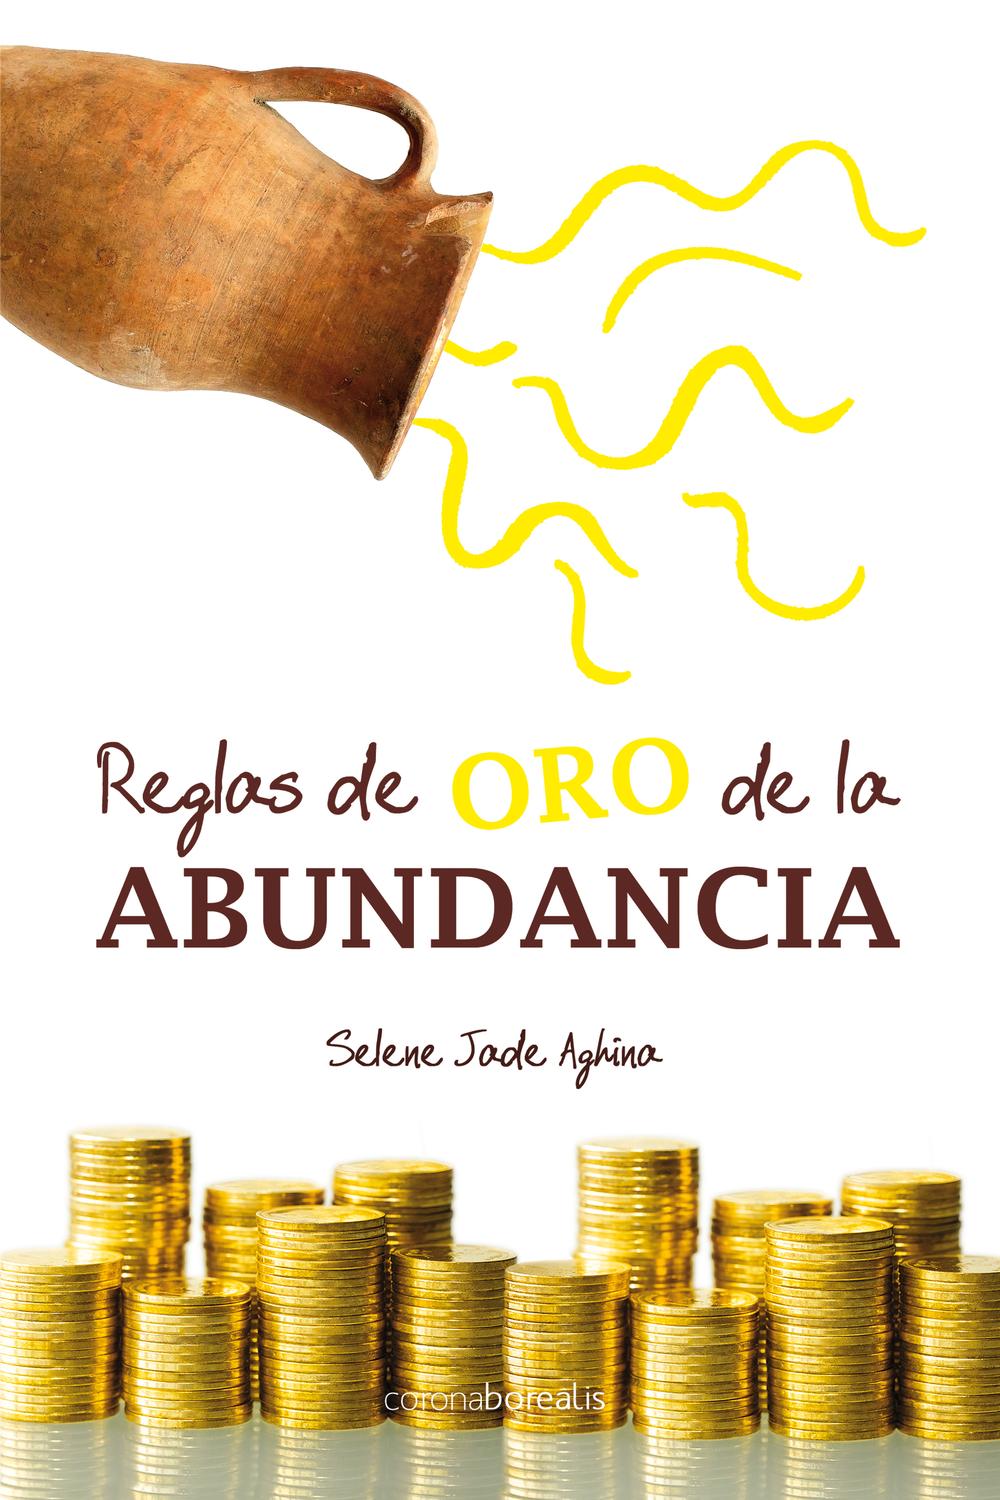 Reglas de oro de la abundancia - Aghina Selene Jade